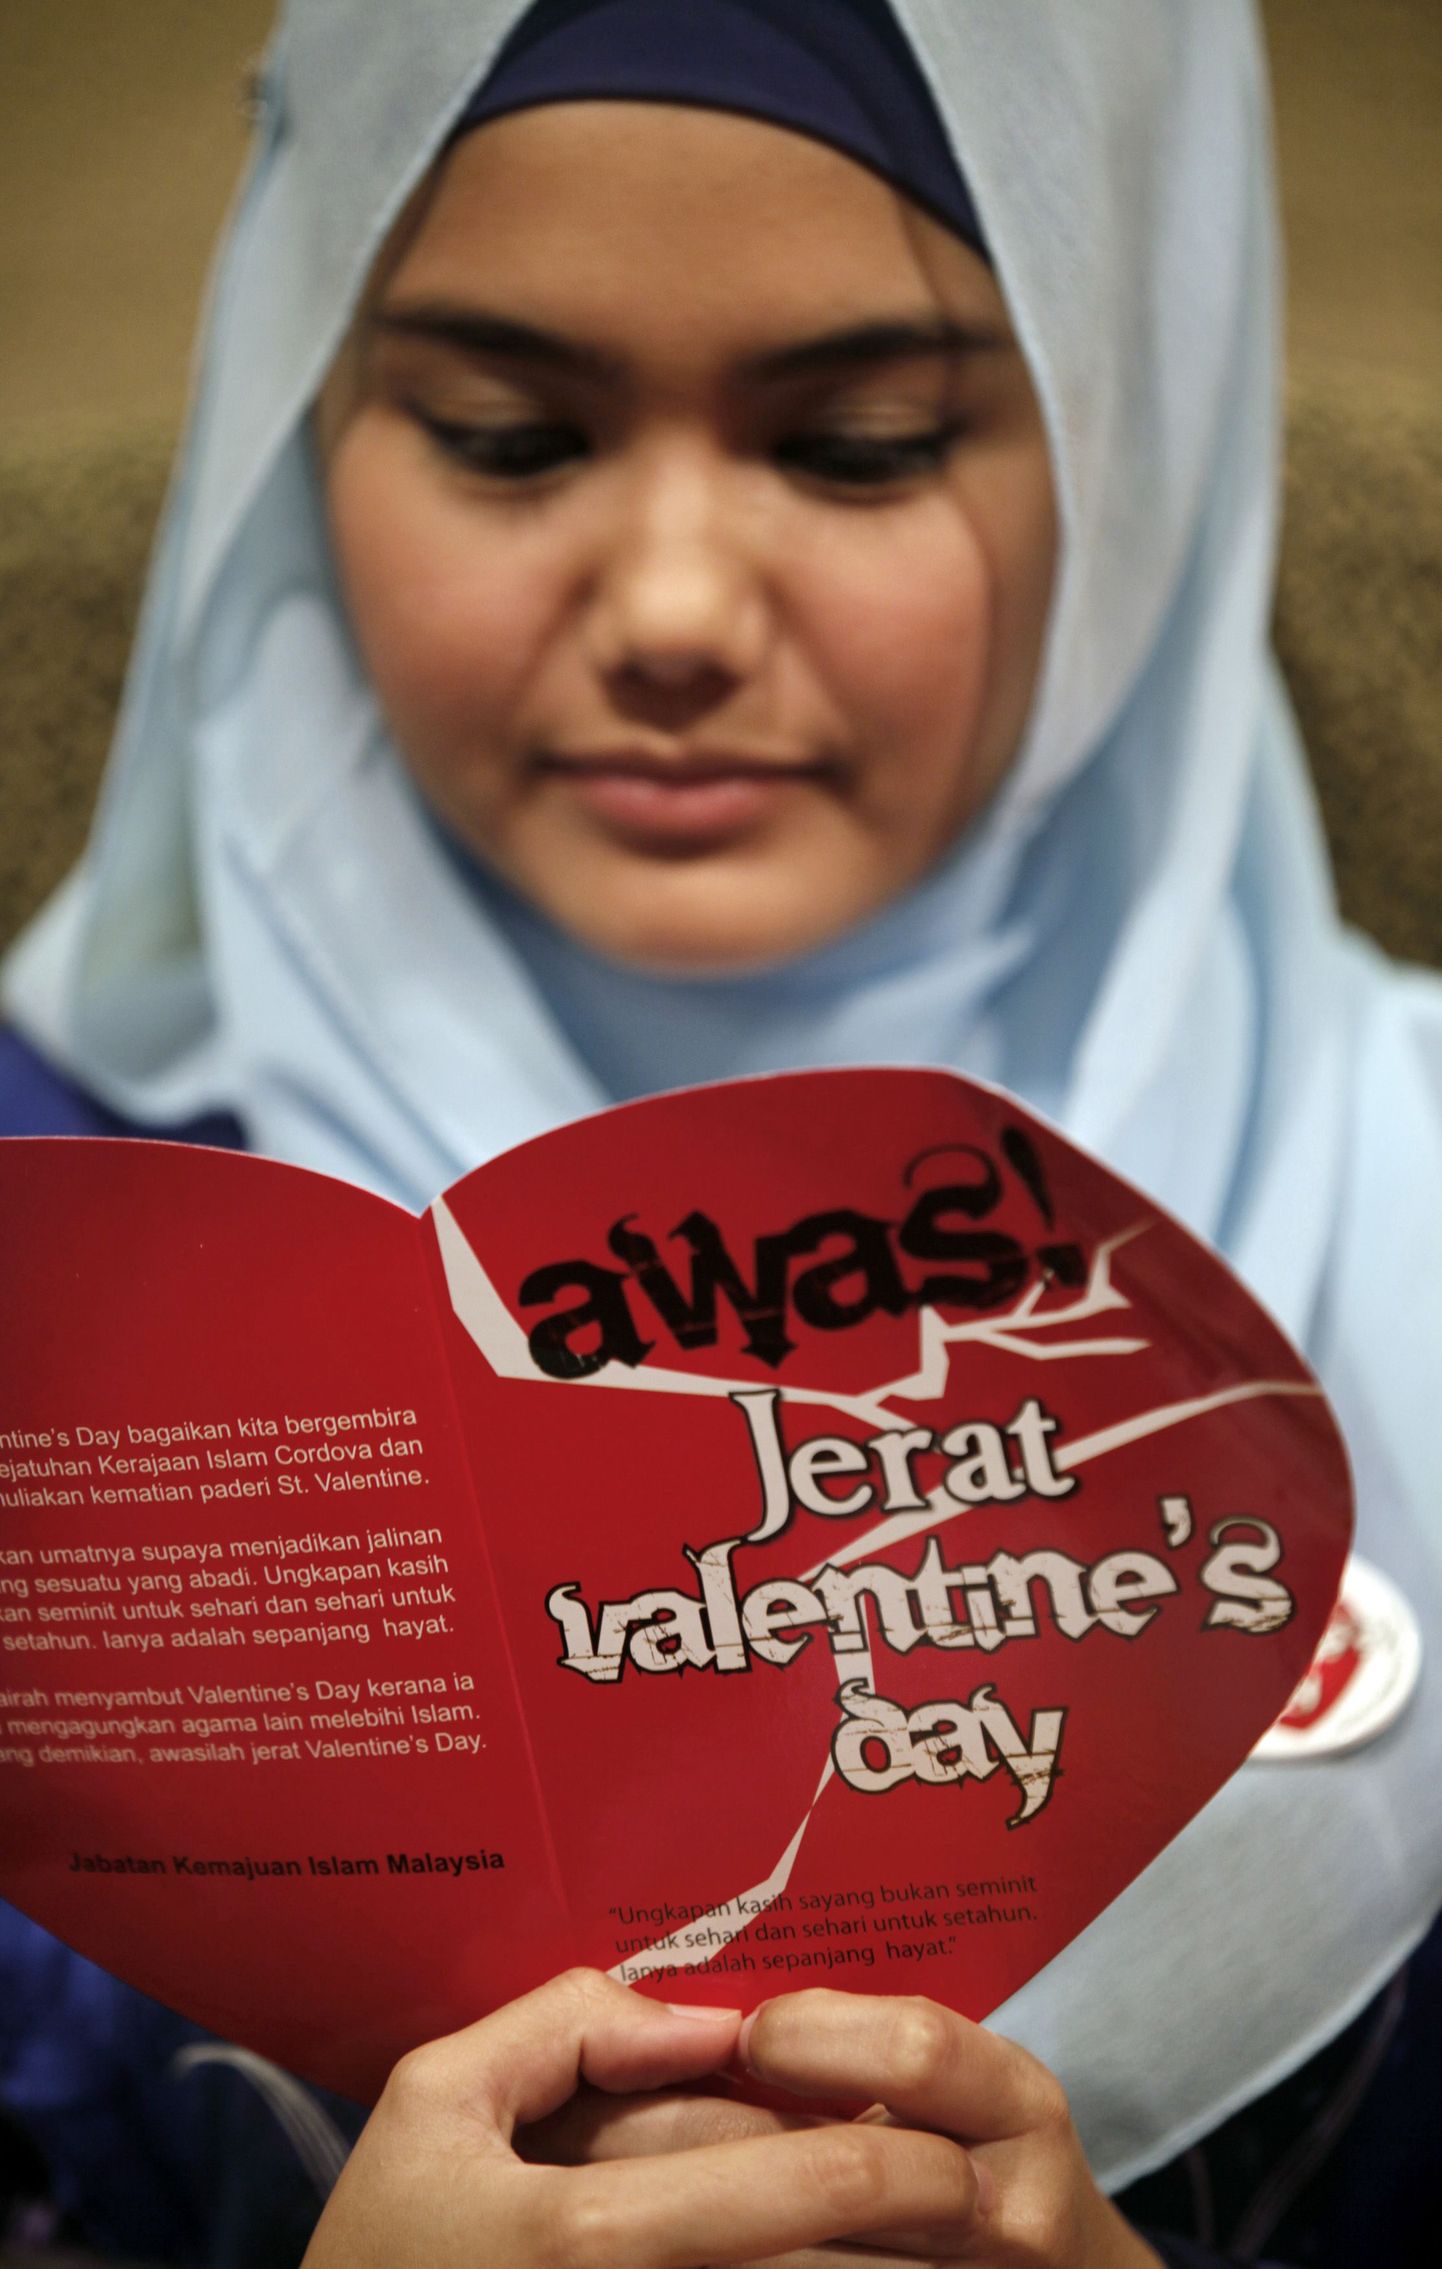 Malaisia moslem Aimi Latif palvetamas valentinipäeva vastasel üritusel. Plakatil seisab: "Ole ettevaatlik valentinipäeva lõksu suhtes."